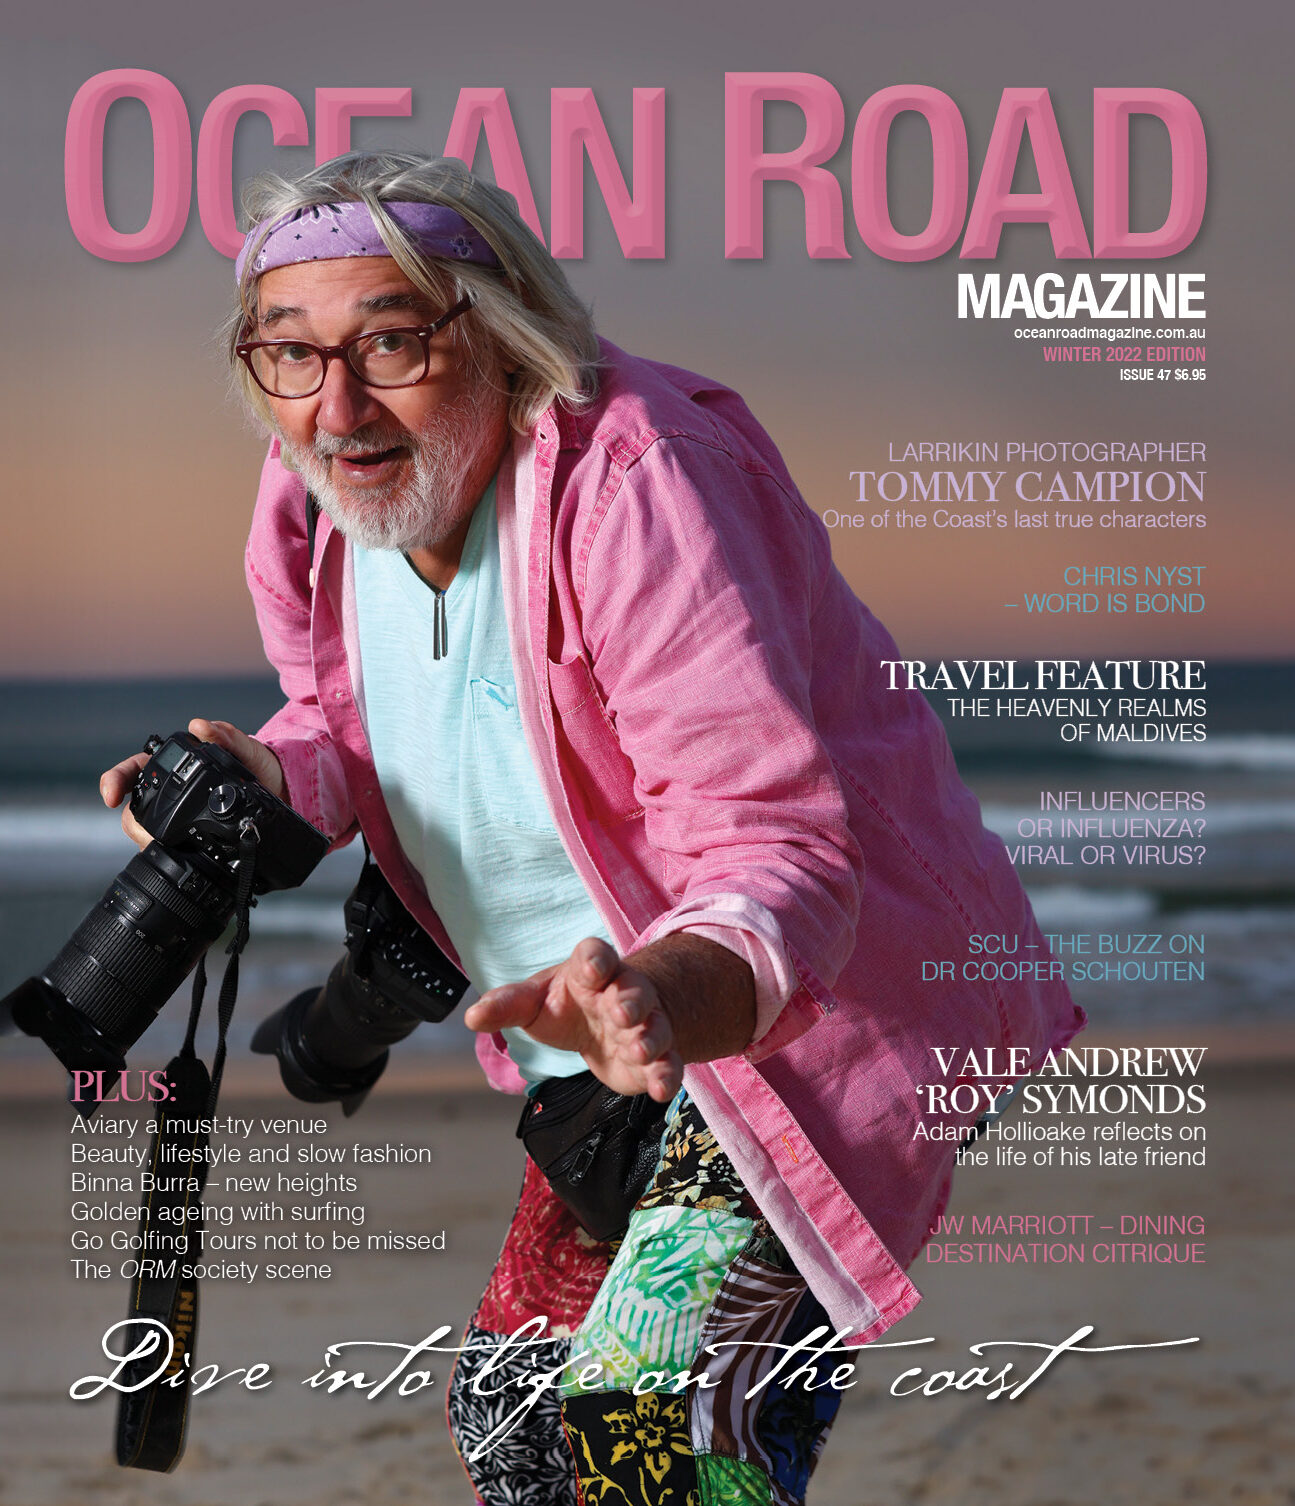 Ocean Road Magazine Article